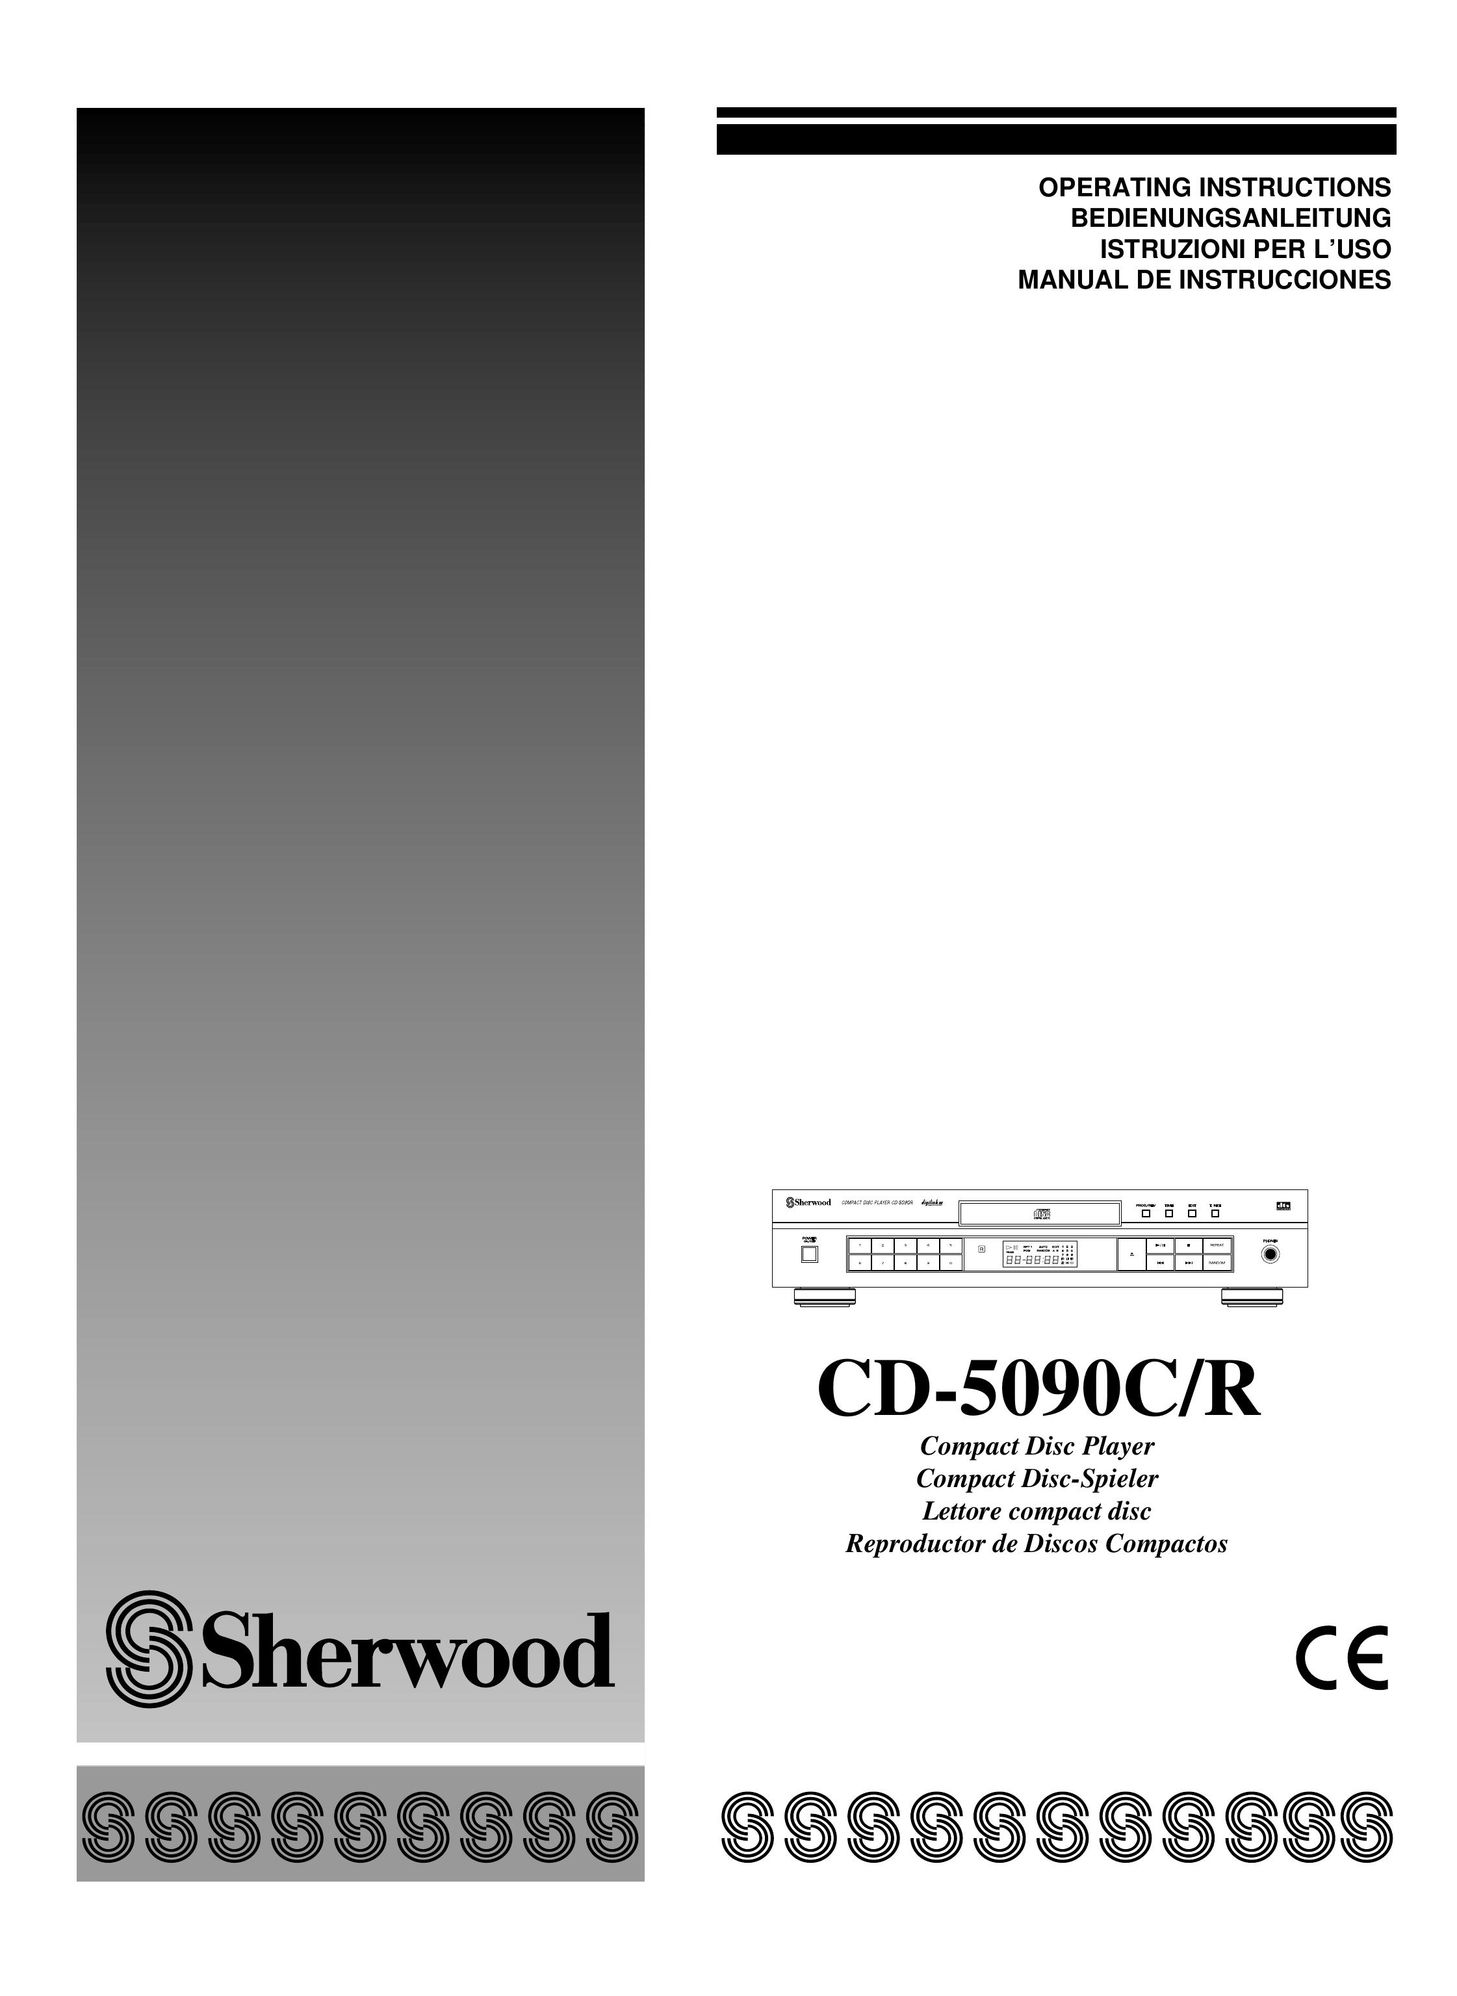 Sherwood CD-5090C/R CD Player User Manual